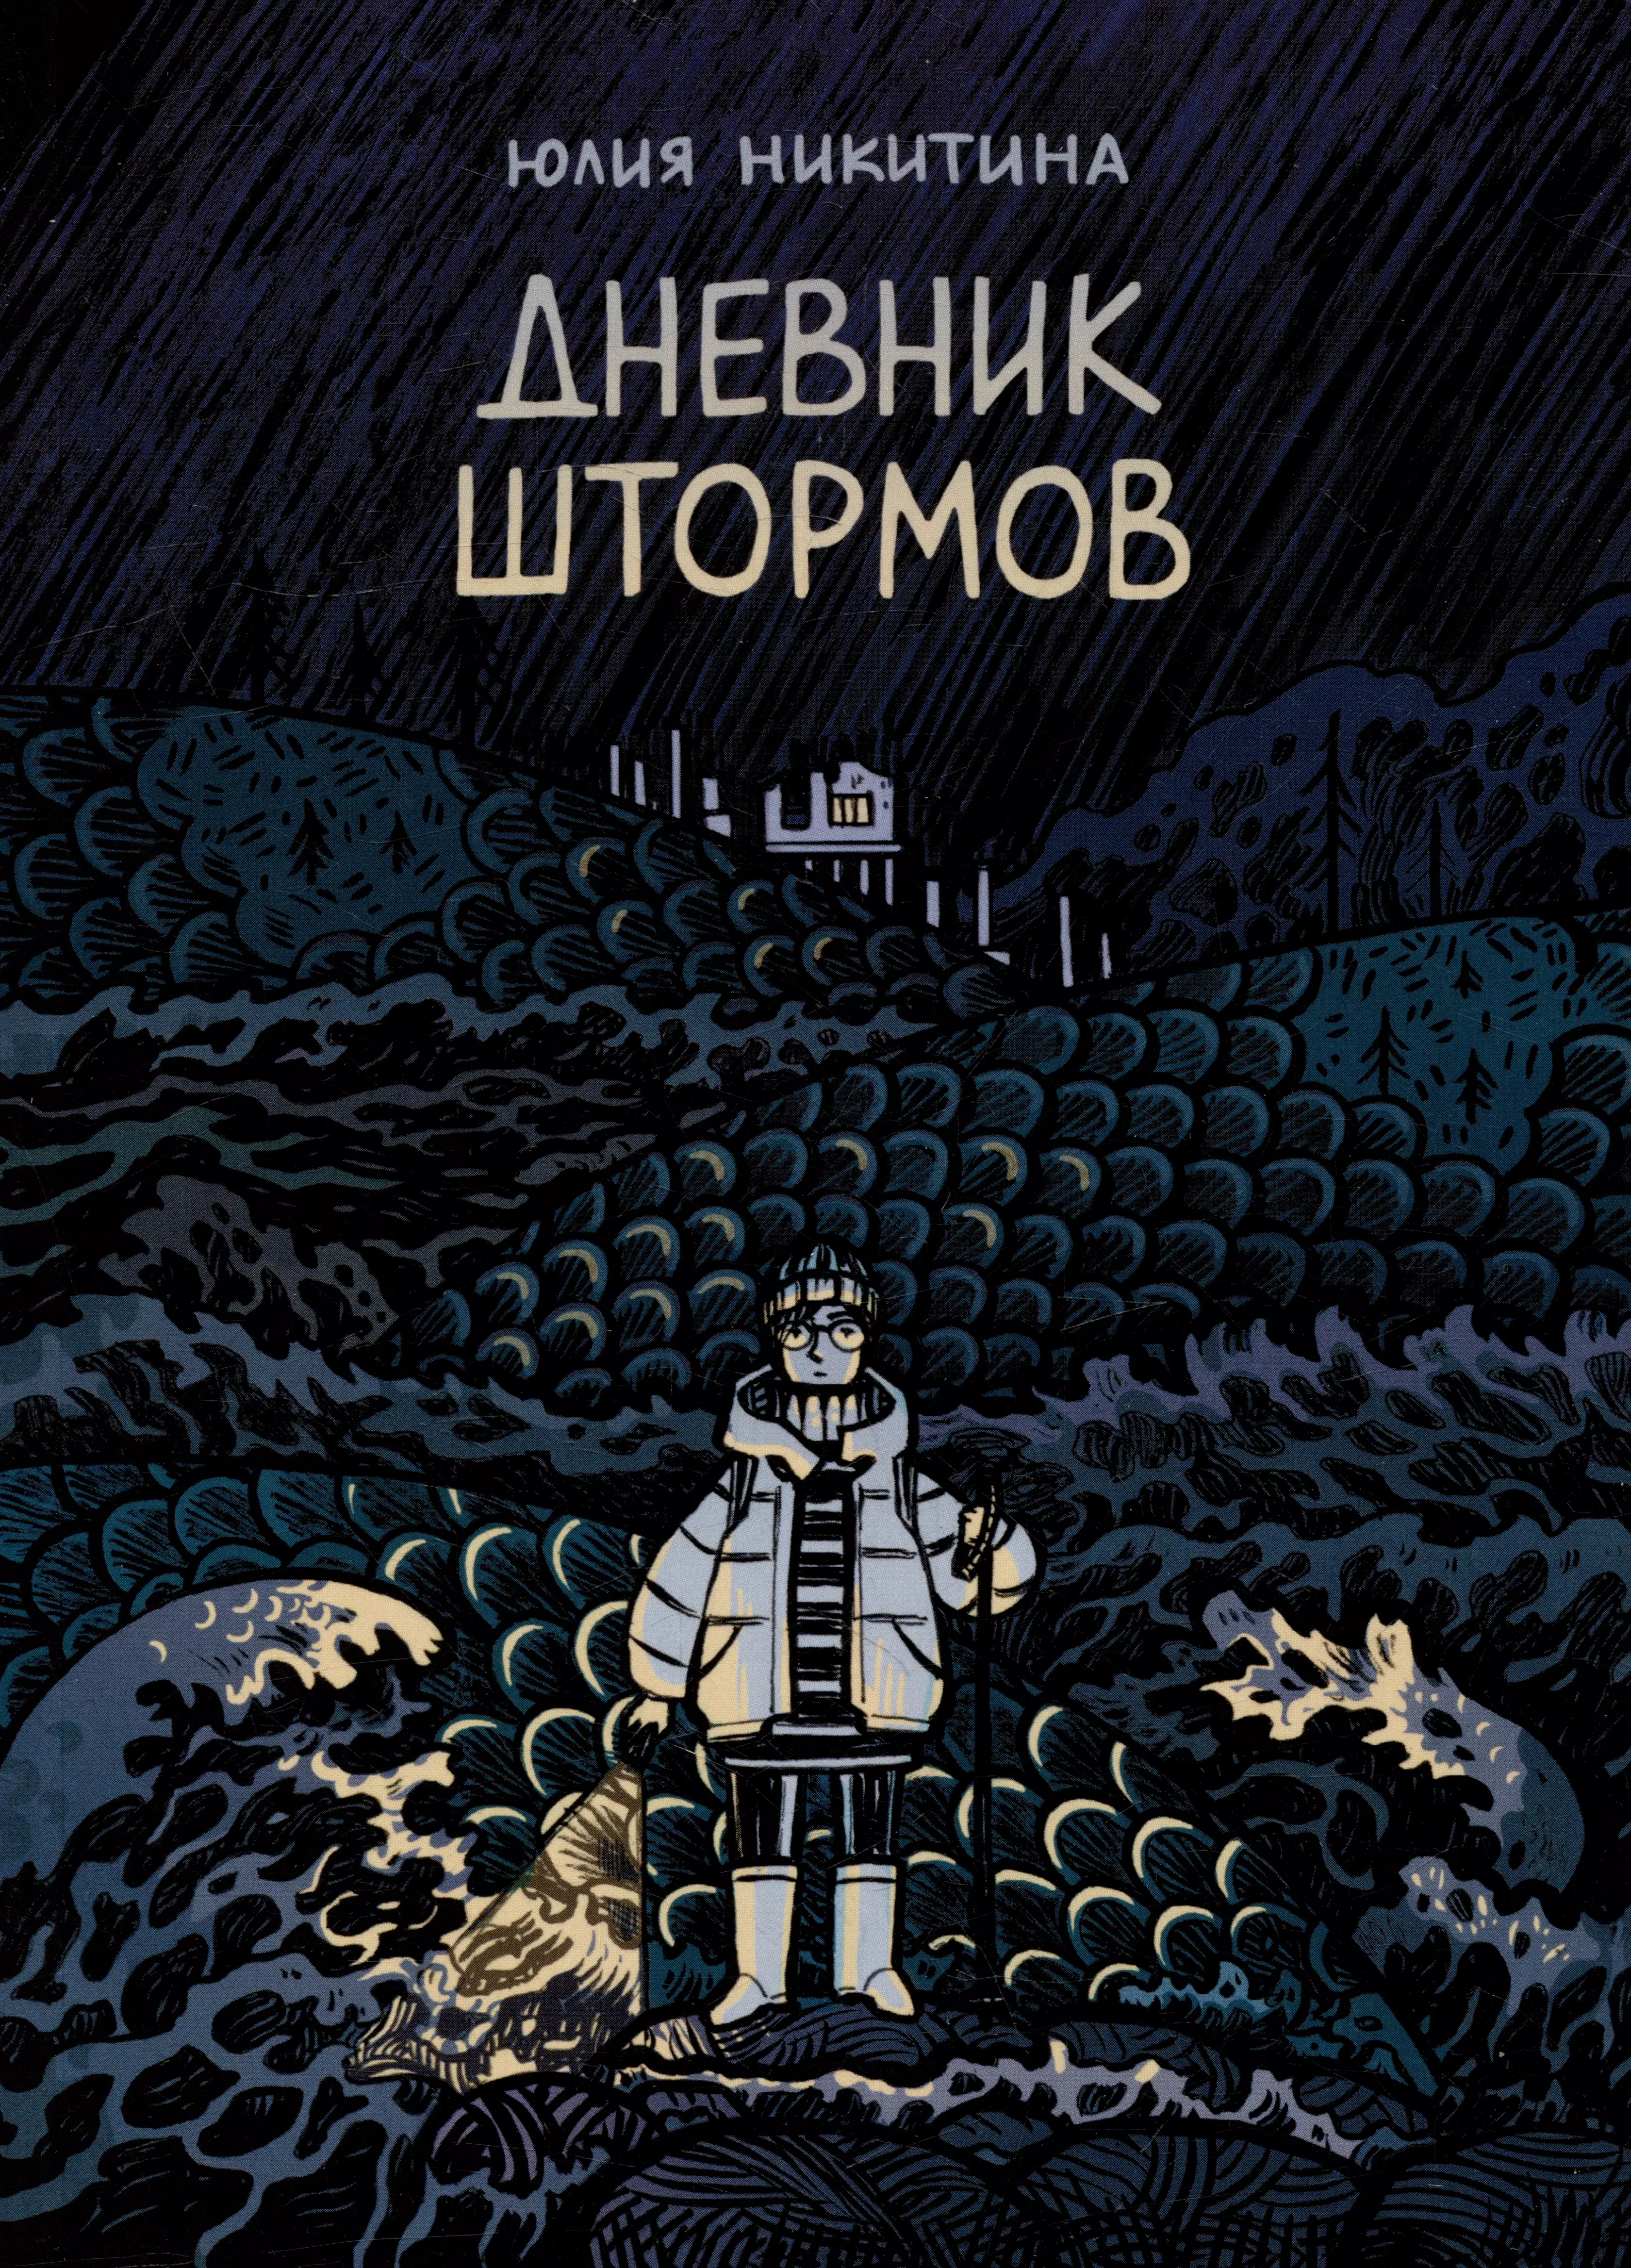 Никитина Юлия - Дневник штормов: графический роман